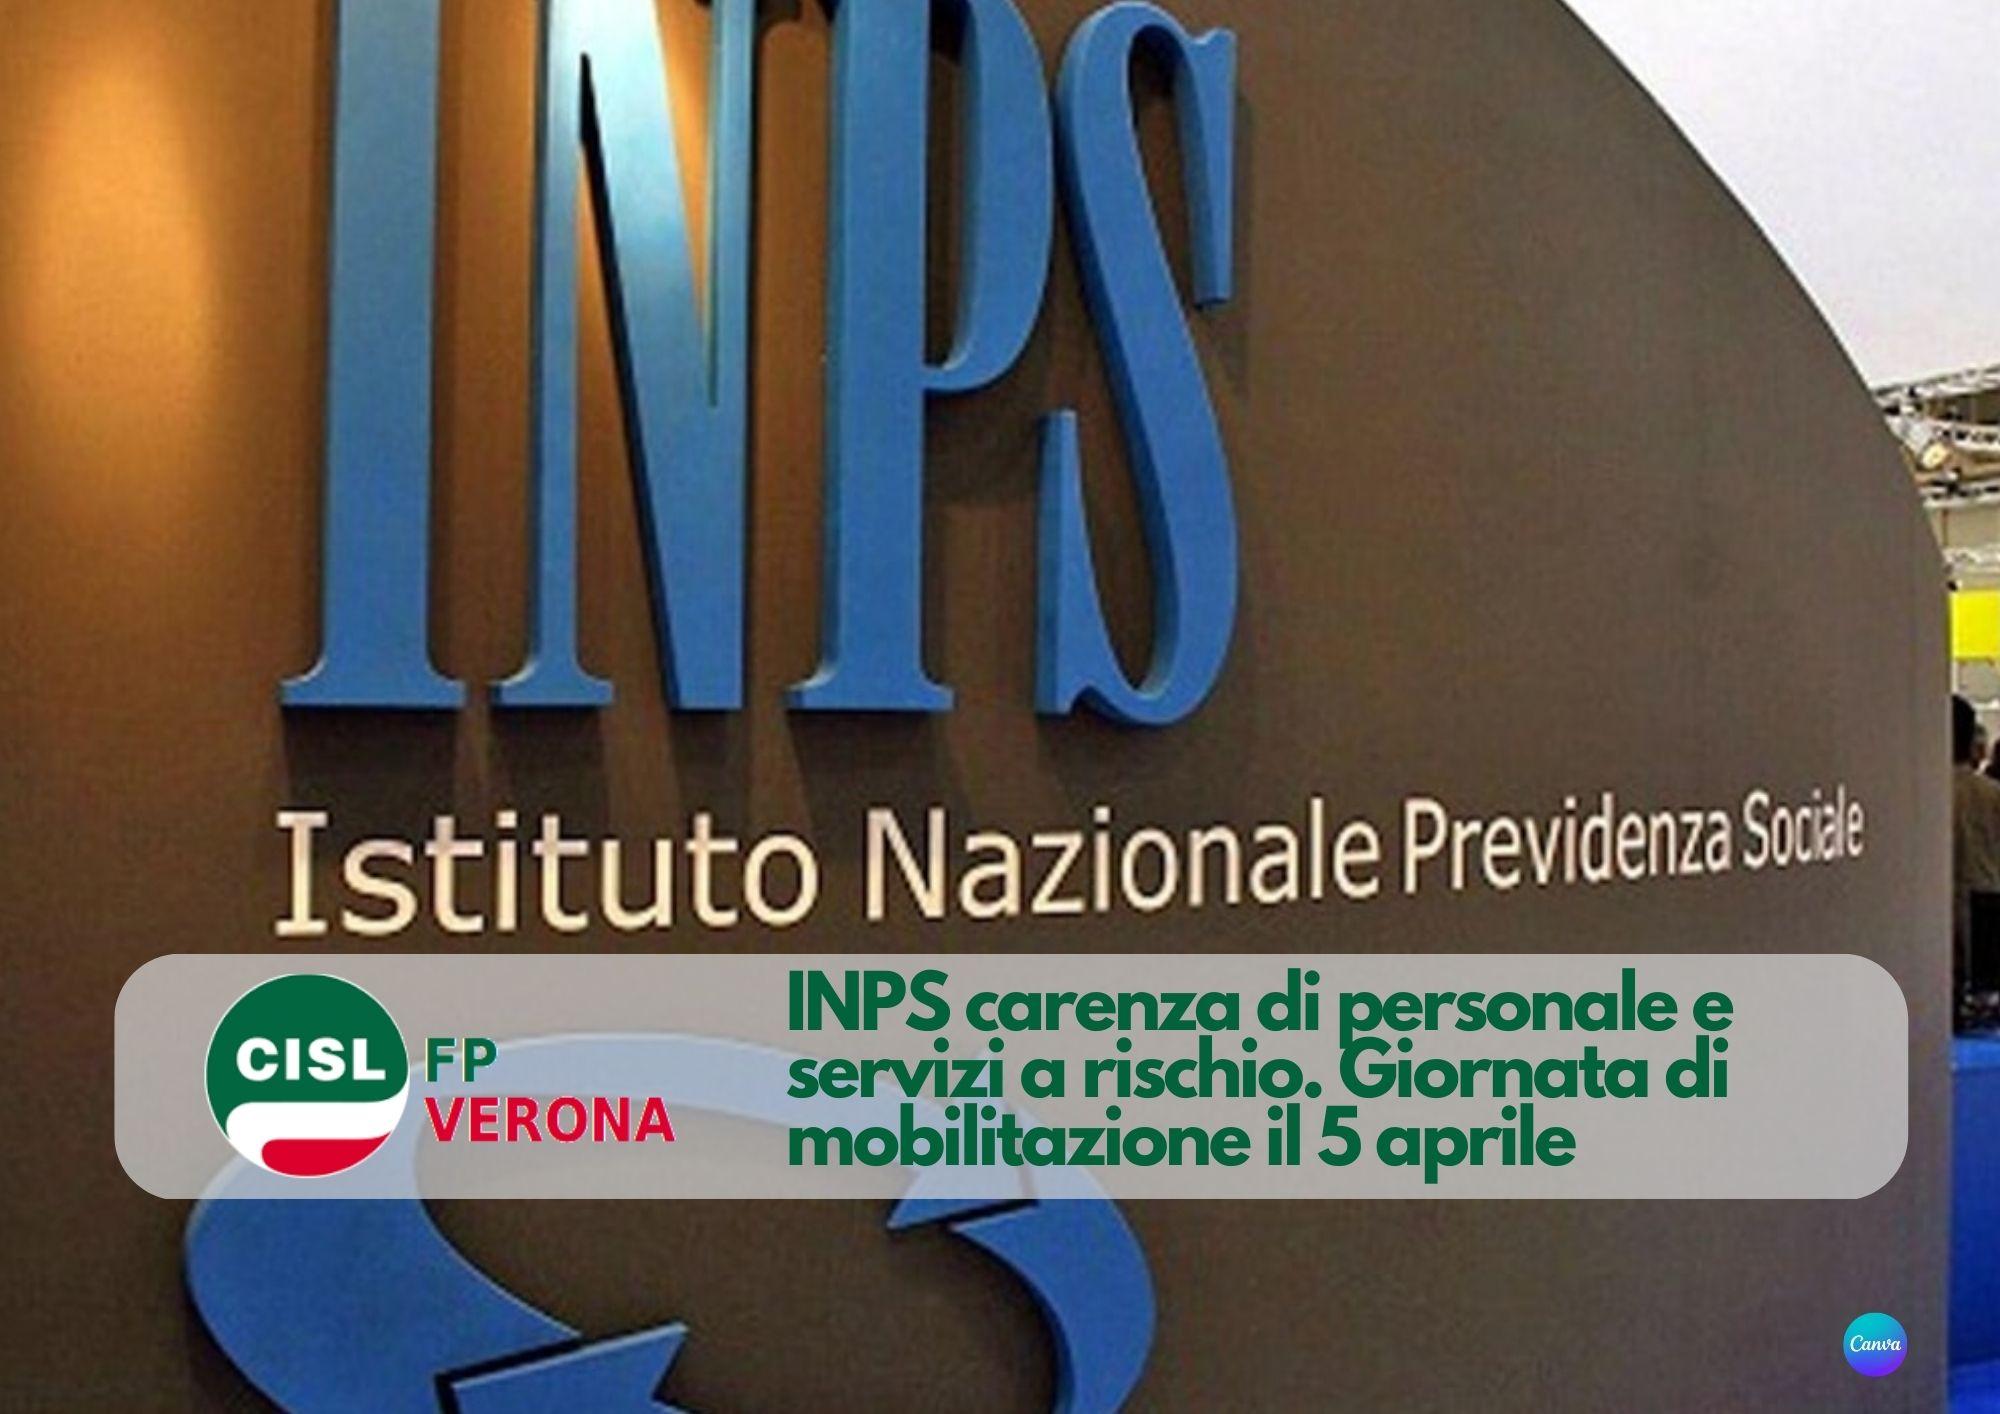 CISL FP Verona. INPS carenza di personale e servizi a rischio. il 5 aprile giornata di mobilitazione in Veneto